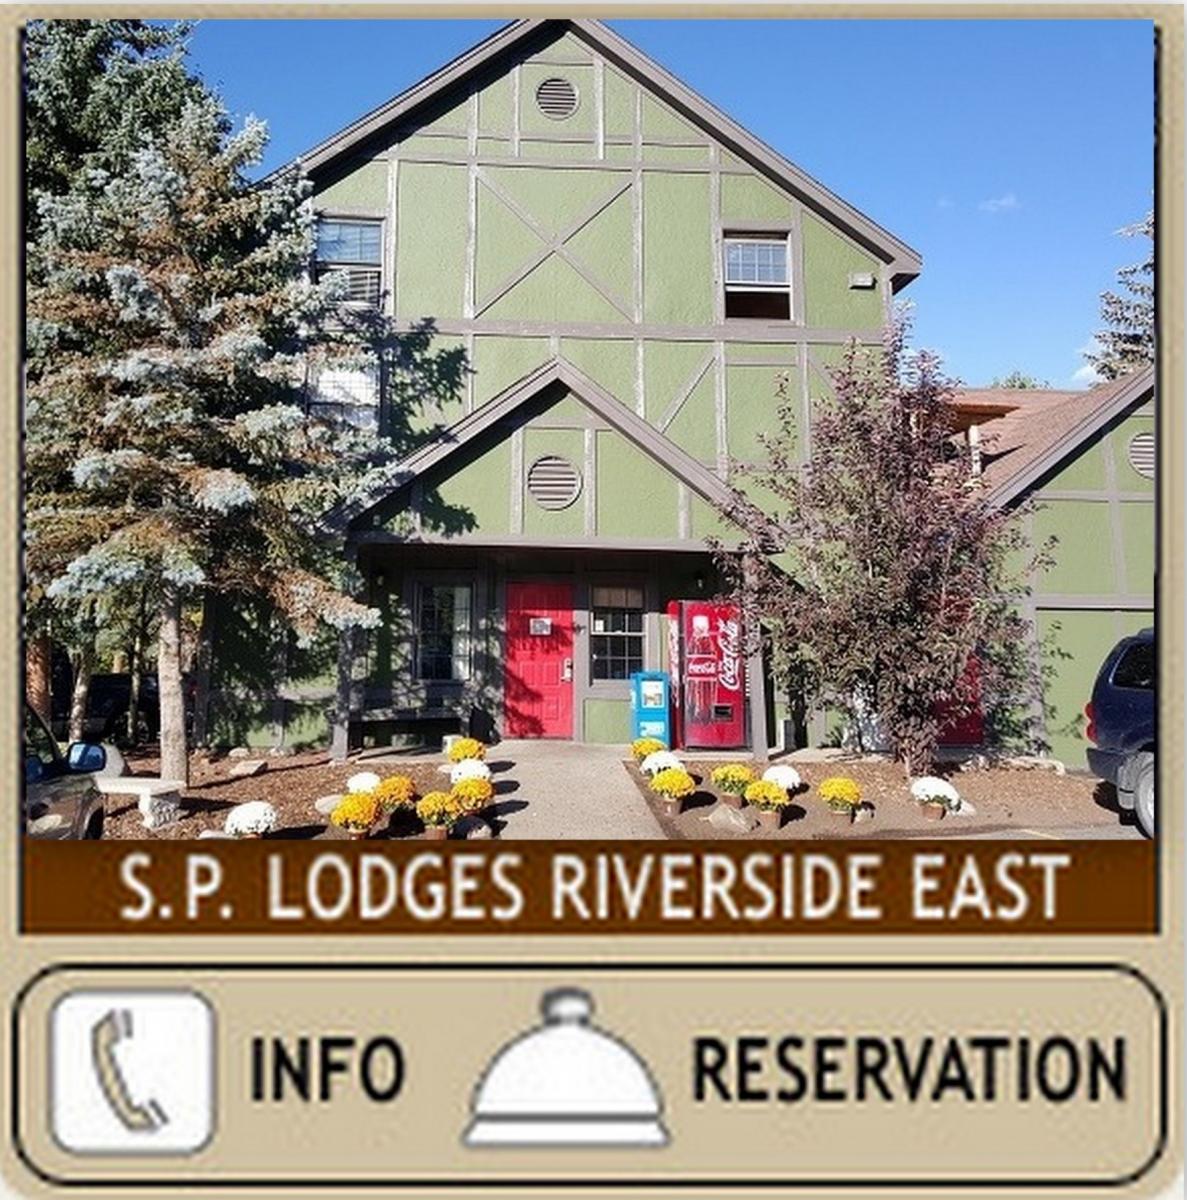 Summit Peaks Lodge Riverside East